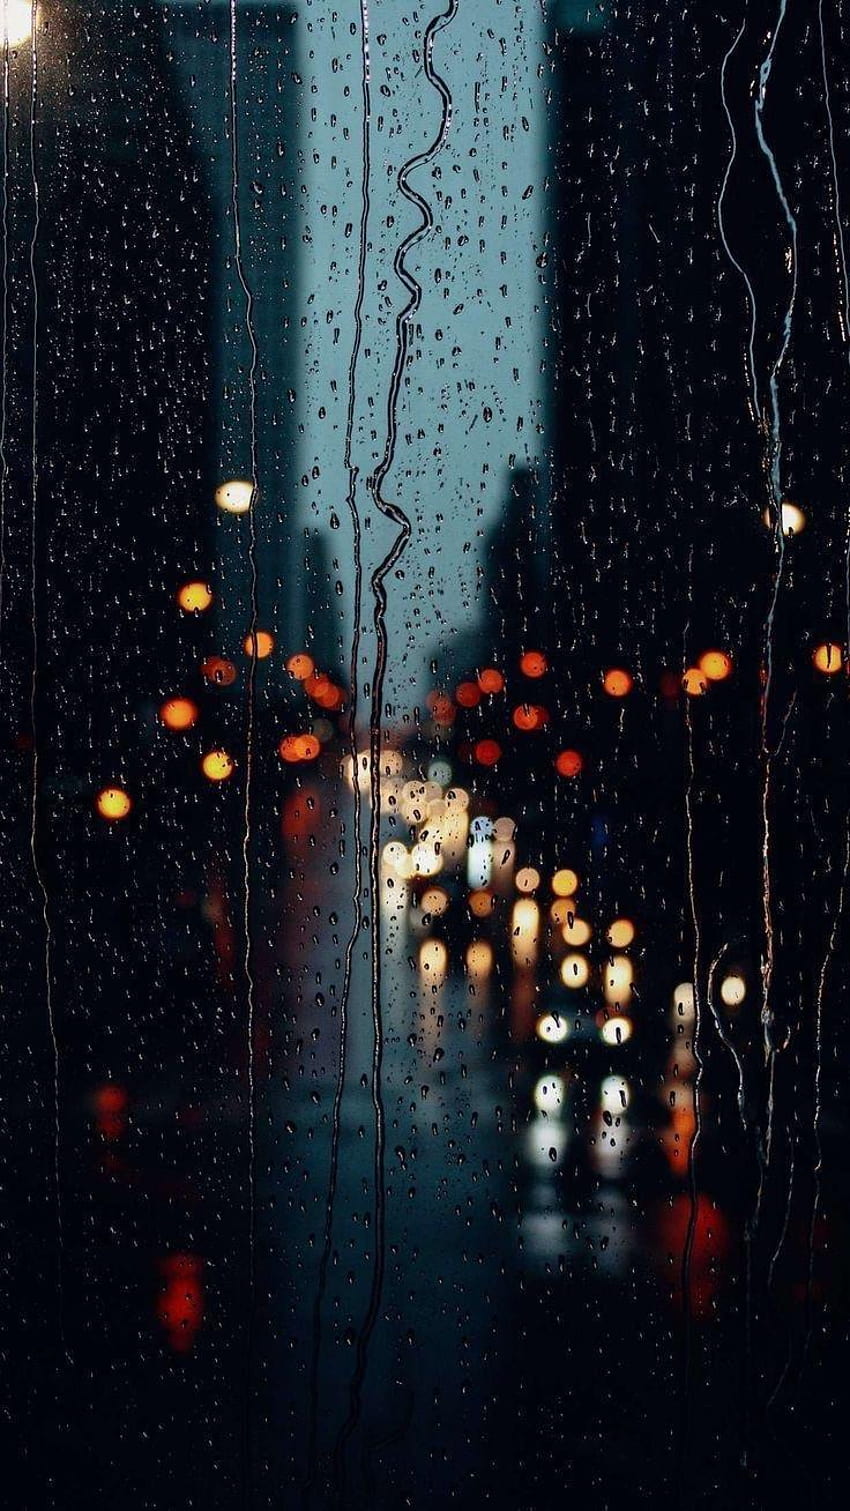 Dia chuvoso pela janela. : r/iphone, dia chuvoso de inverno Papel de parede de celular HD